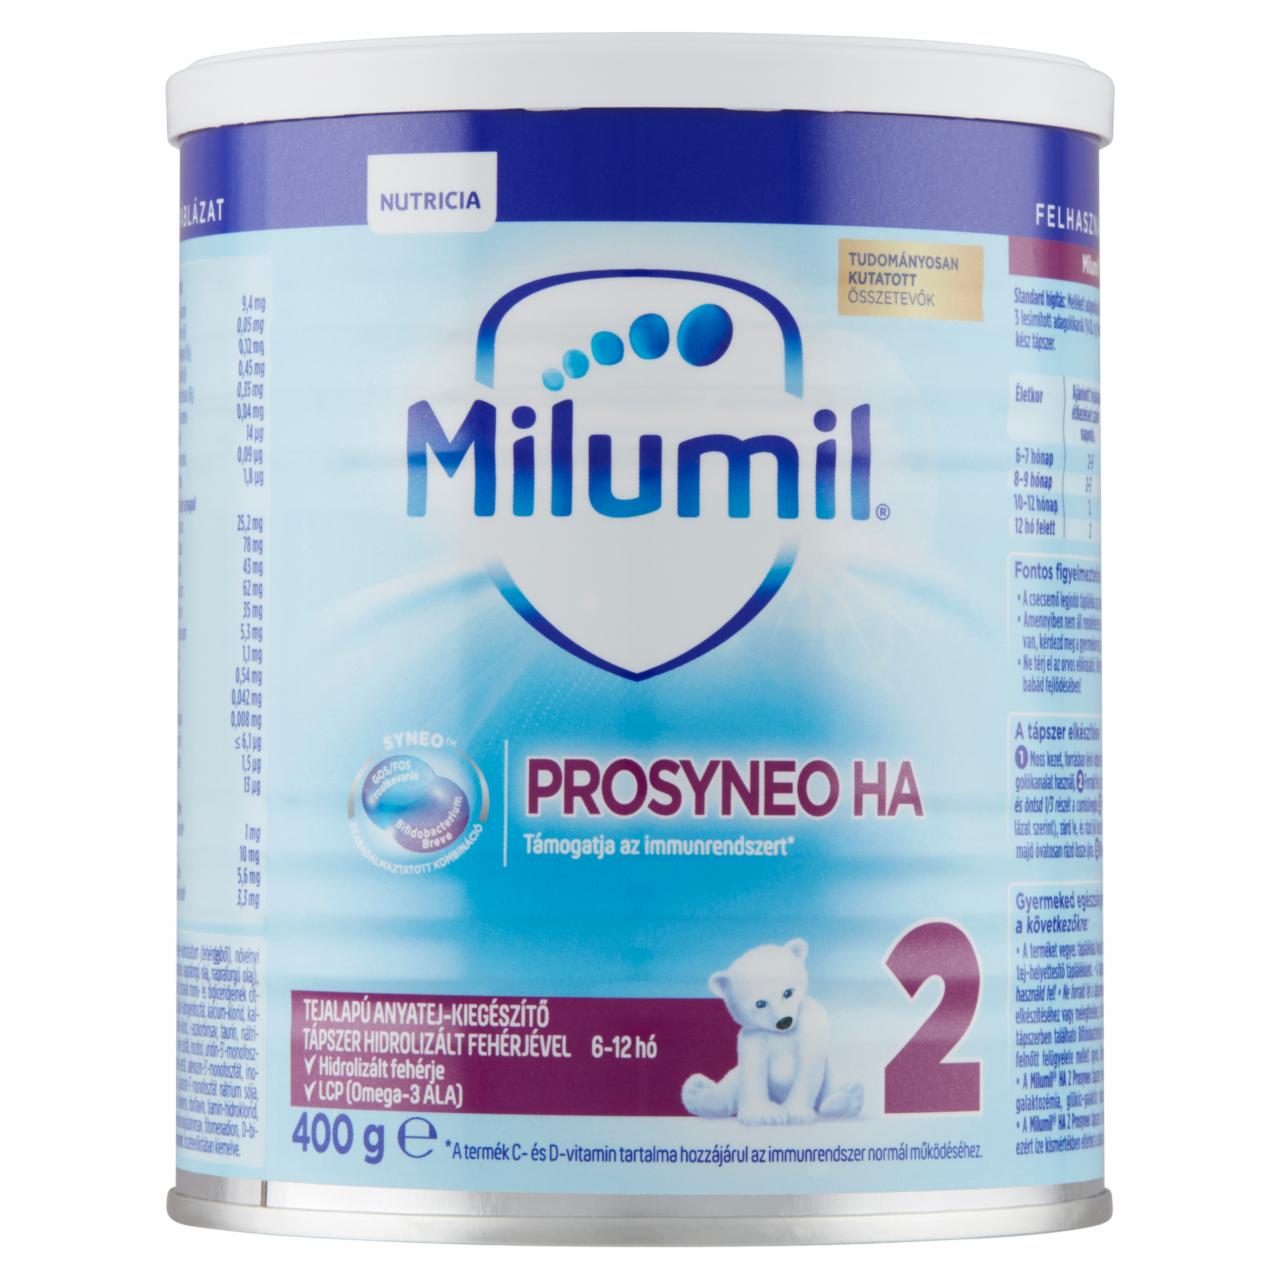 Képek - Milumil HA 2 Prosyneo tejalapú anyatej-kiegészítő tápszer hidrolizált fehérjével 6-12 hó 400 g